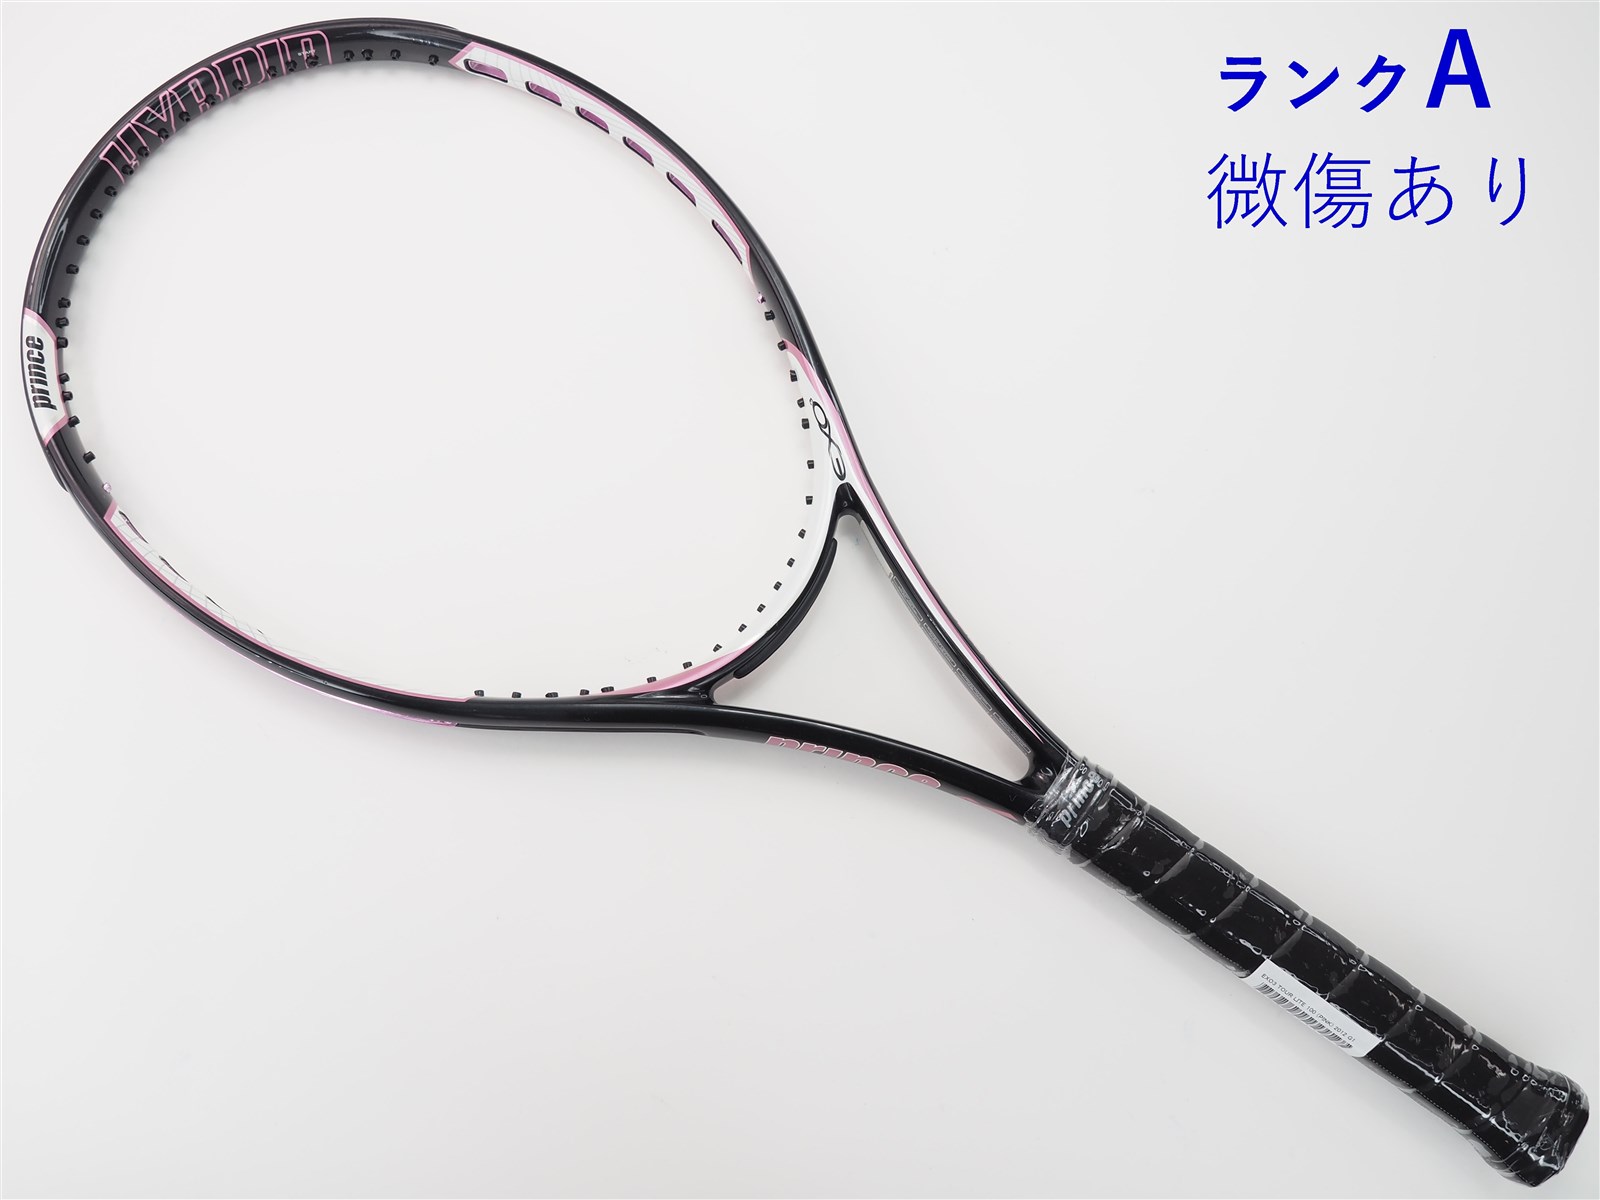 テニスラケット プリンス エックス 100 ツアー 2019年モデル (G2